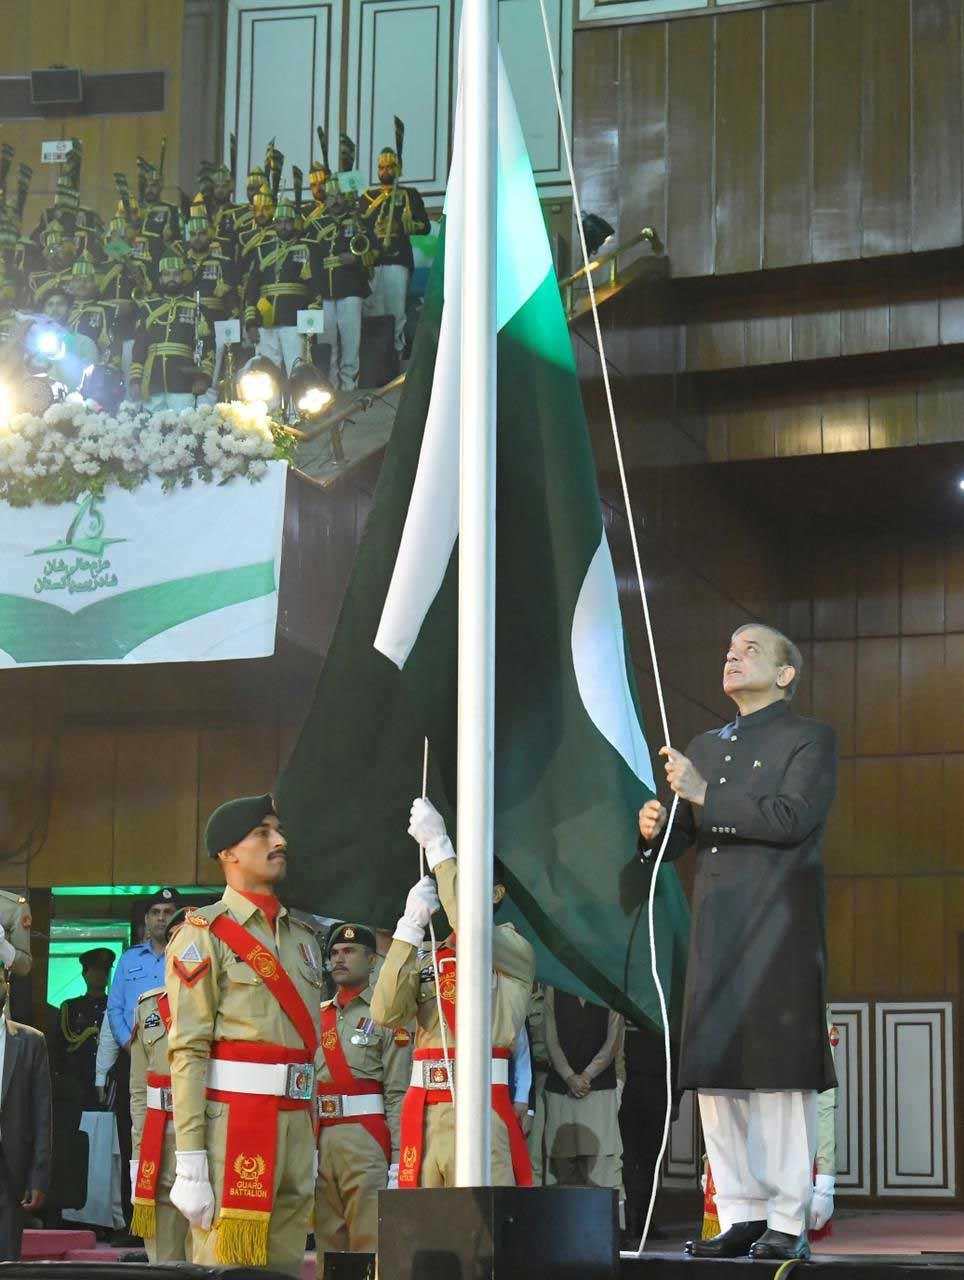 Prime Minister Shehbaz Sharif is hoisting the national flag.